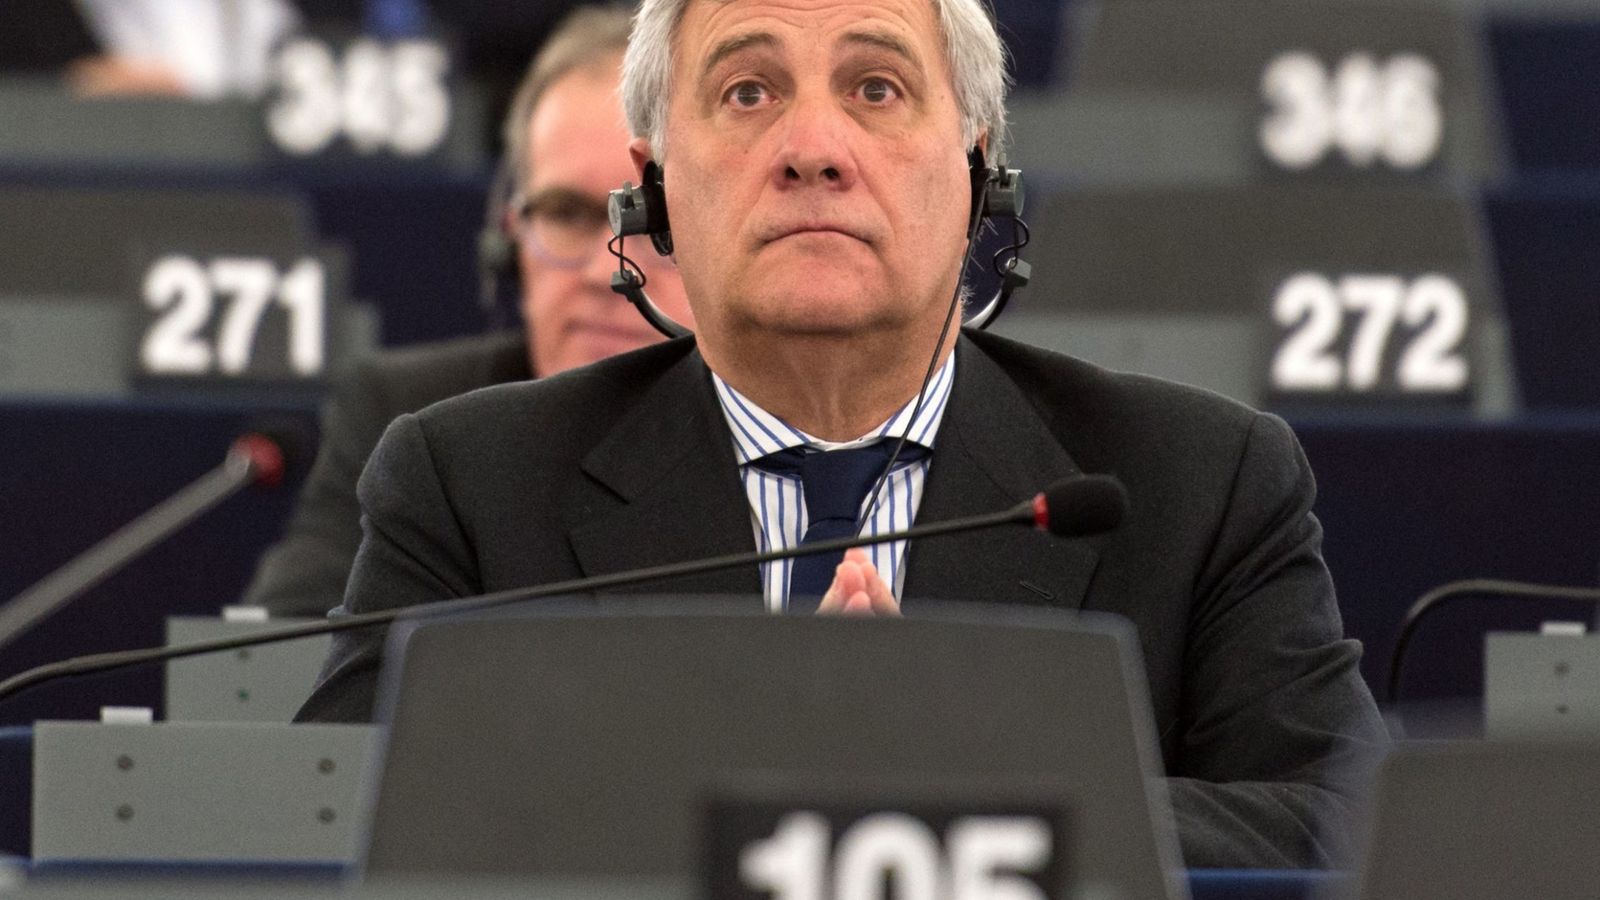 Foto: Antonio Tajani, del Grupo del Partido Popular Europeo (PPE), participa de la sesión plenaria del Parlamento Europeo el martes 13 de diciembre de 2016 (EFE)